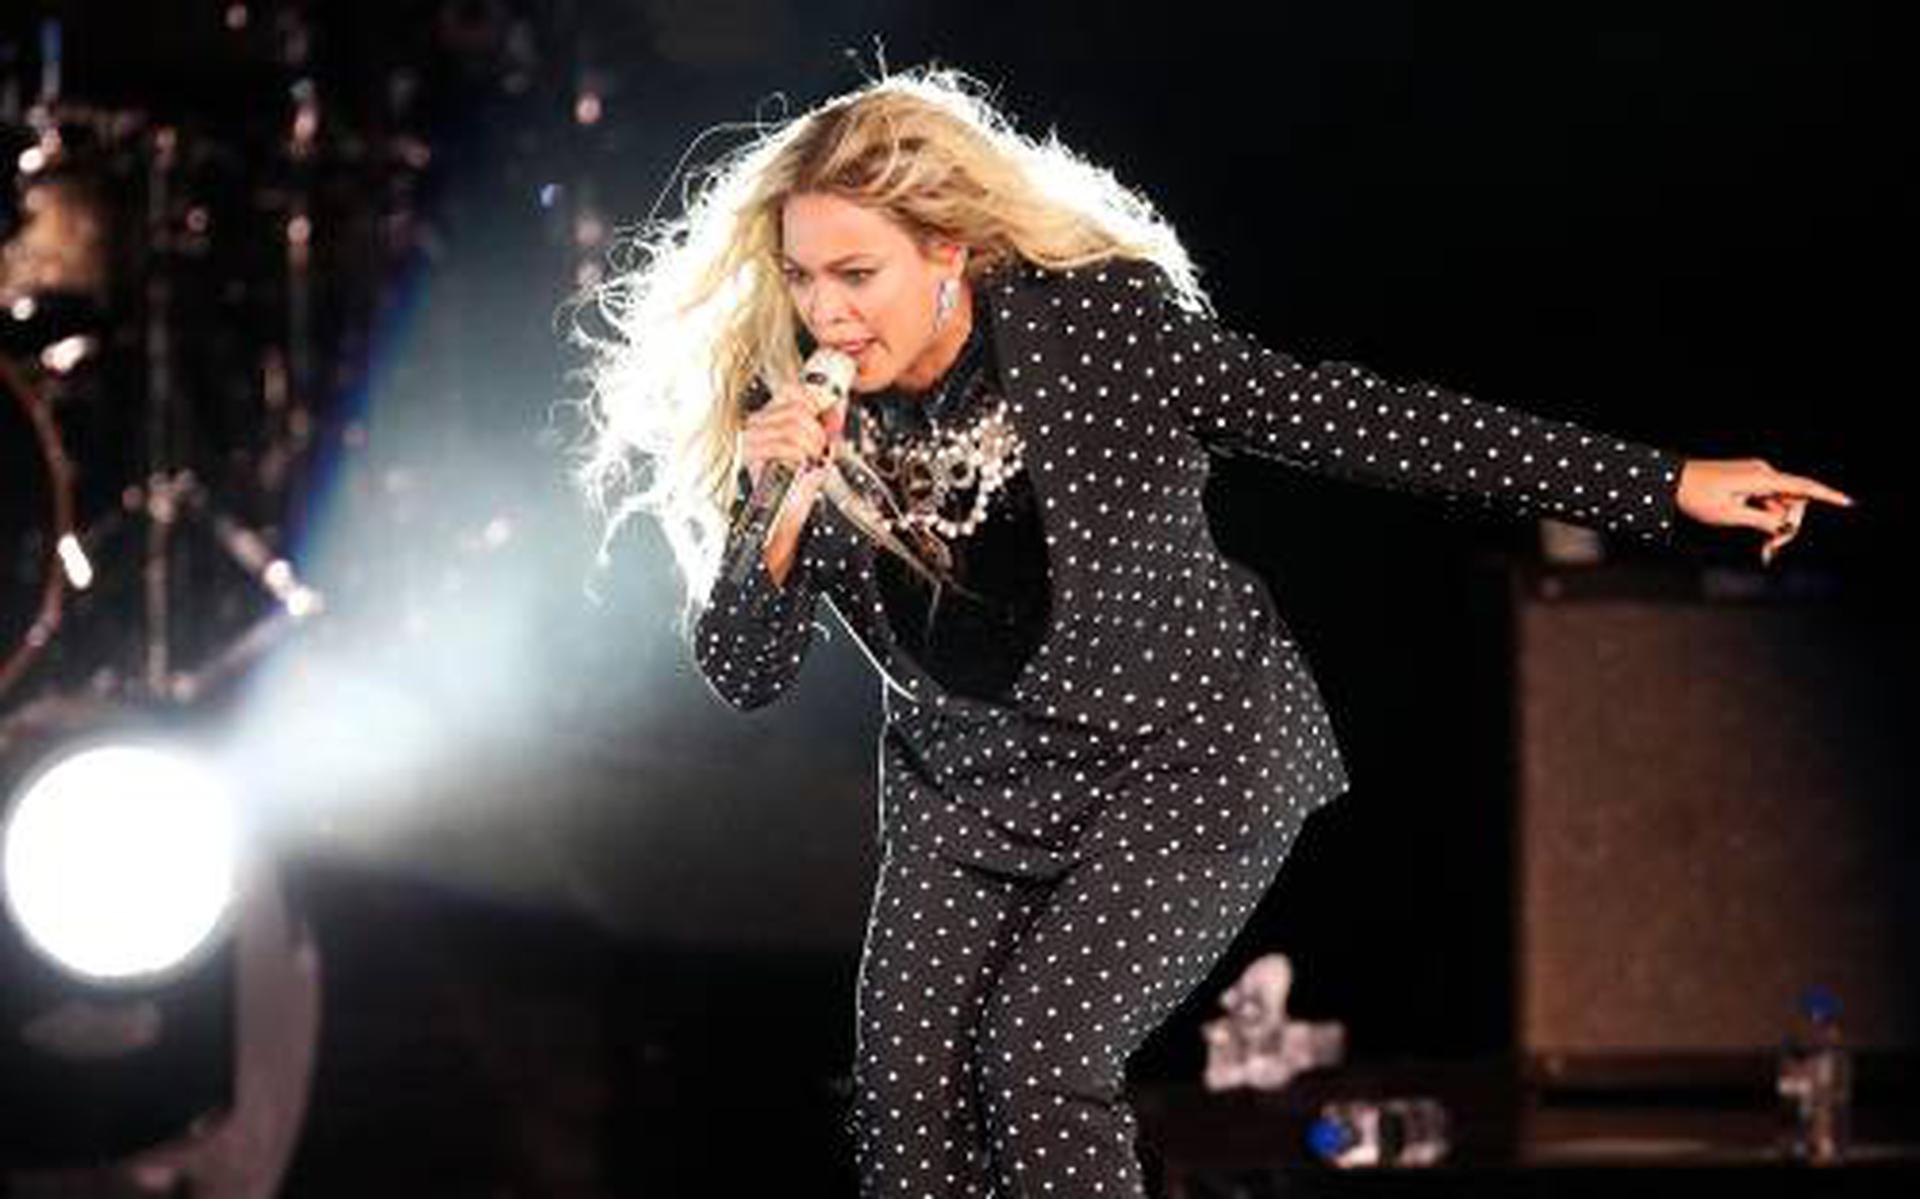 Spreek luid afbreken parfum Adidas strikt Beyoncé voor schoenen en kleding - Leeuwarder Courant